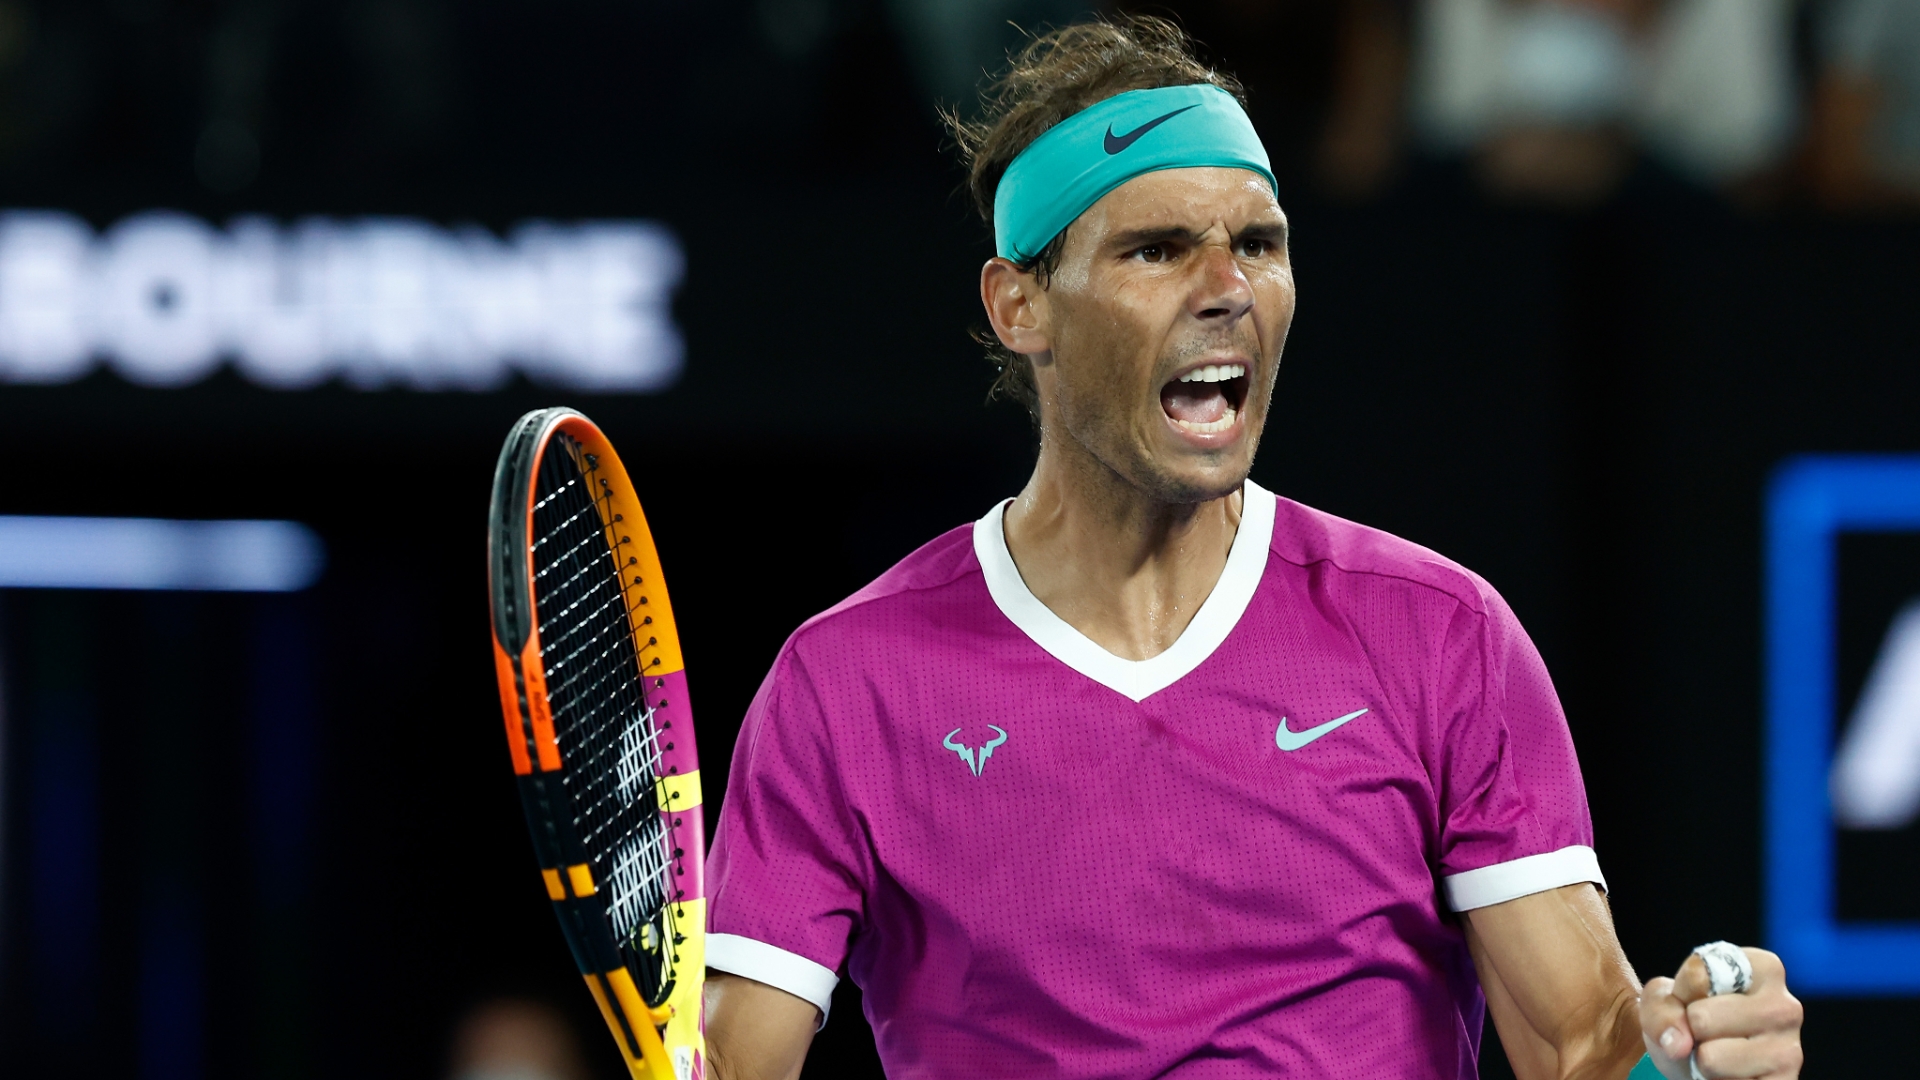 Nadal wins four-set thriller to earn spot in Australian Open final